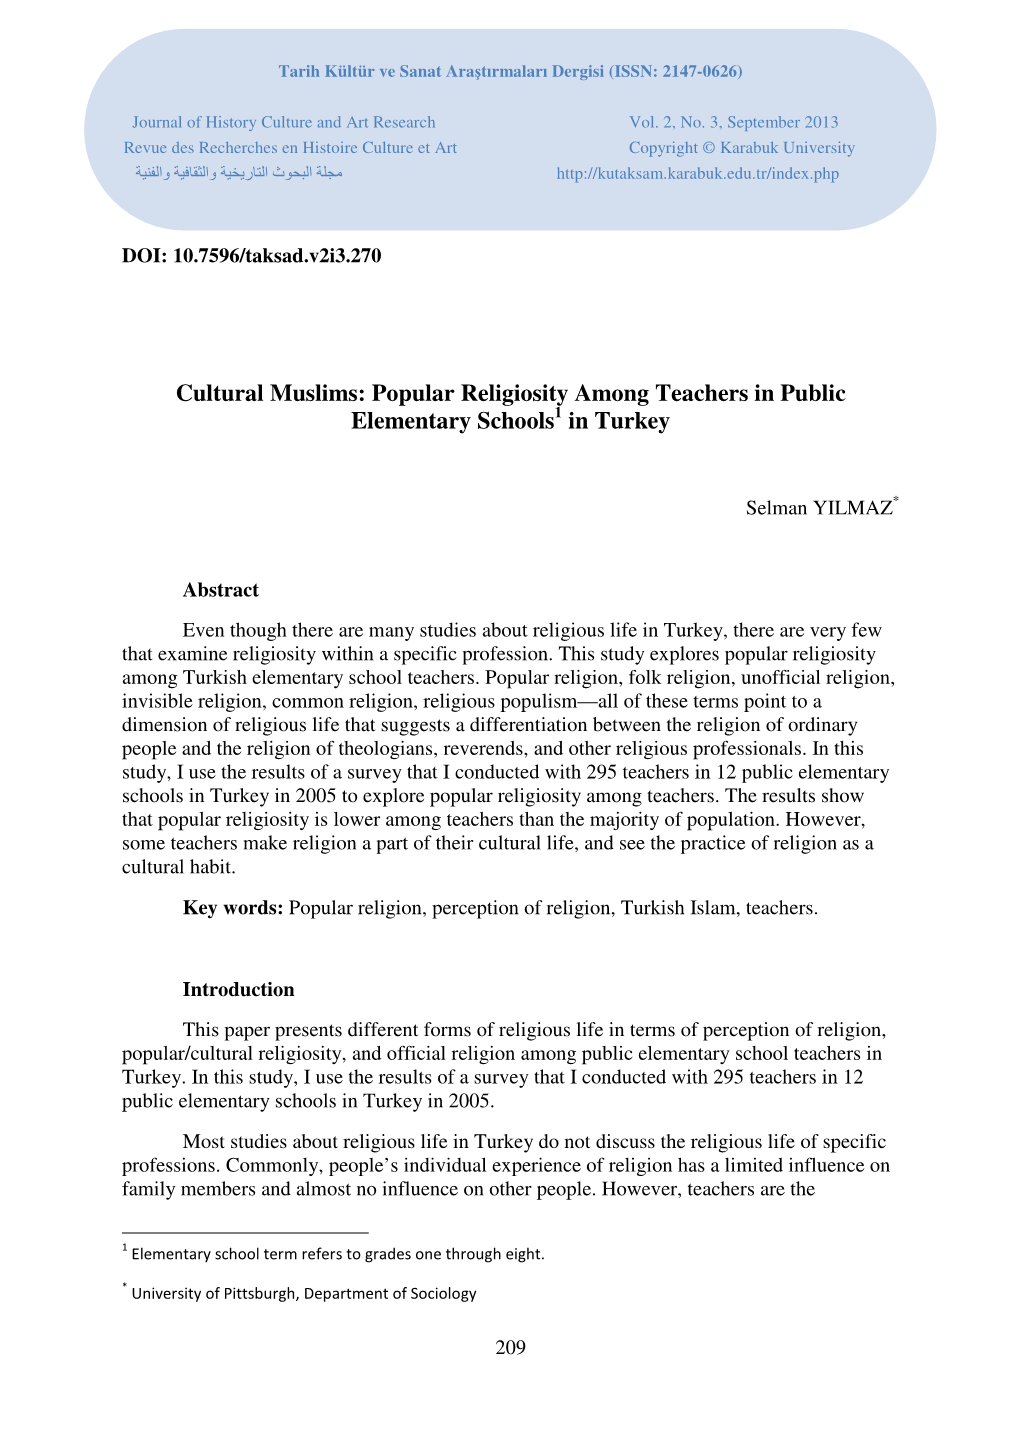 Cultural Muslims: Popular Religiosity Among Teachers in Public Elementary Schools 1 in Turkey